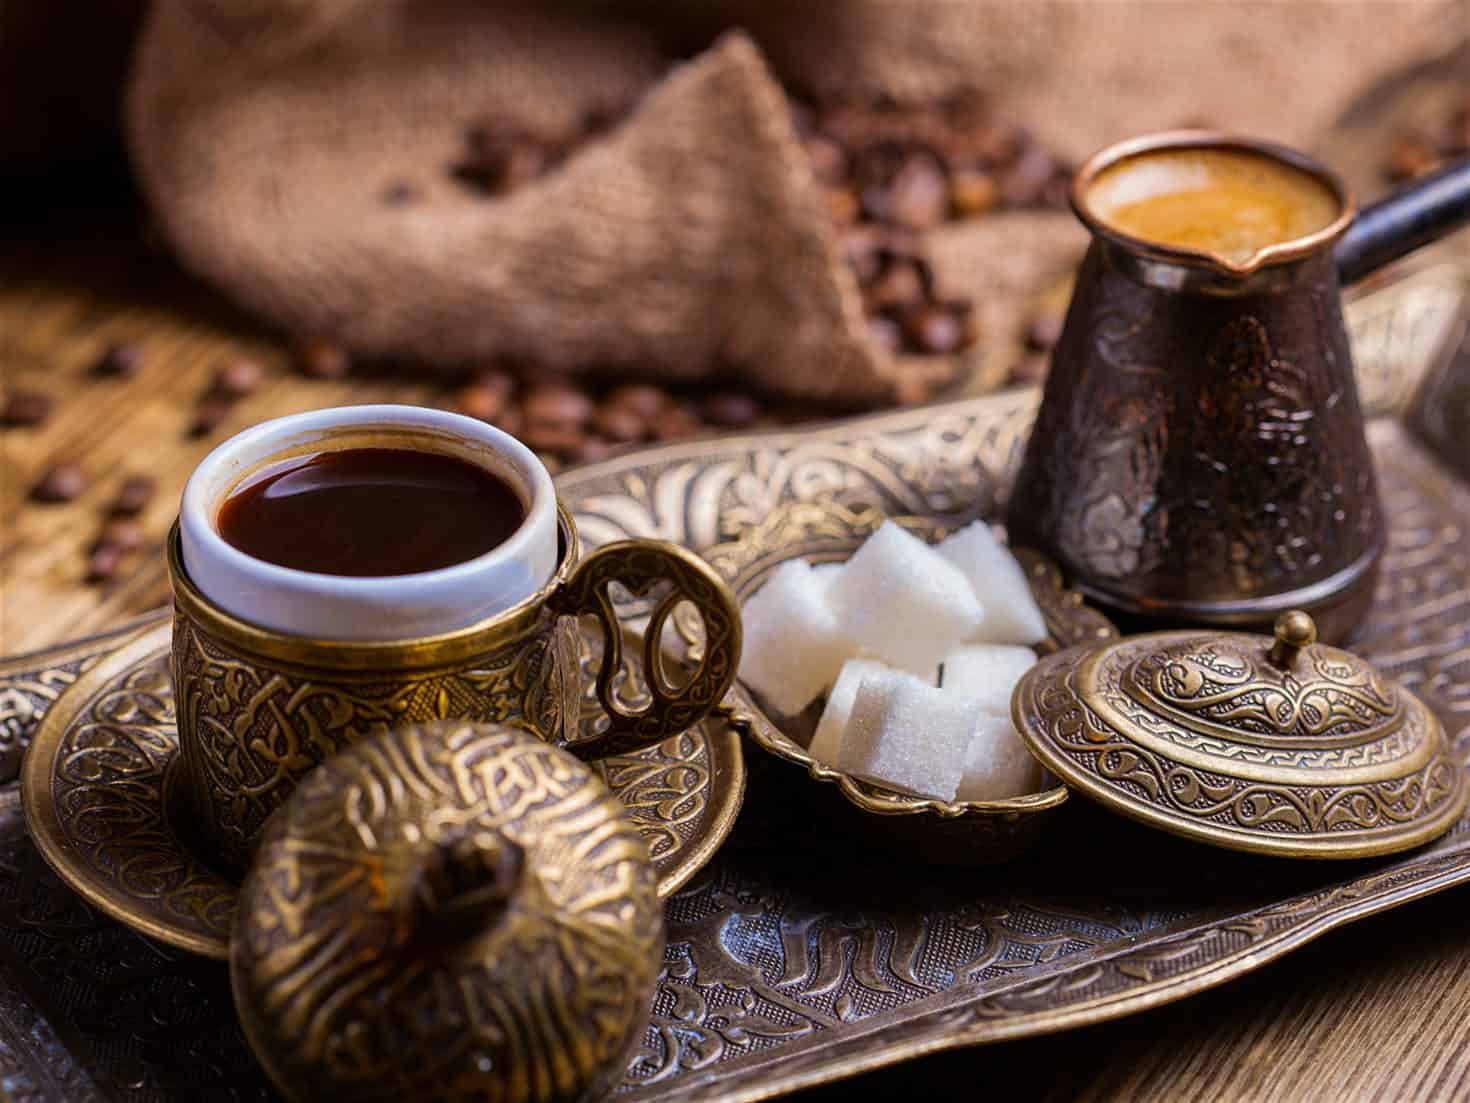 السعرات الحرارية في القهوة التركية